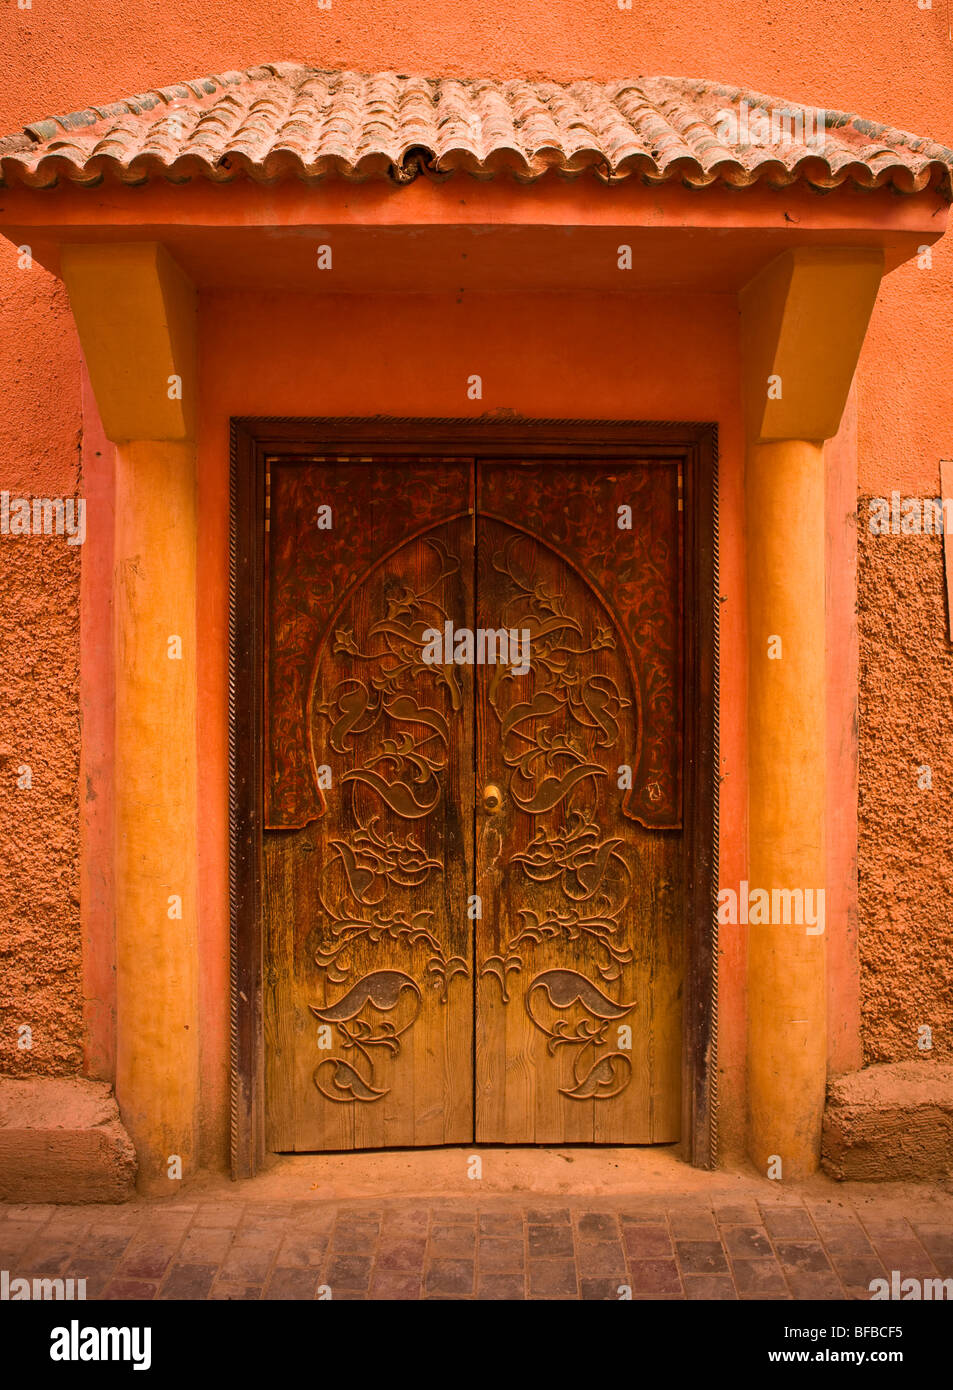 Marrakesch, Marokko - Tür in der Medina. Stockfoto